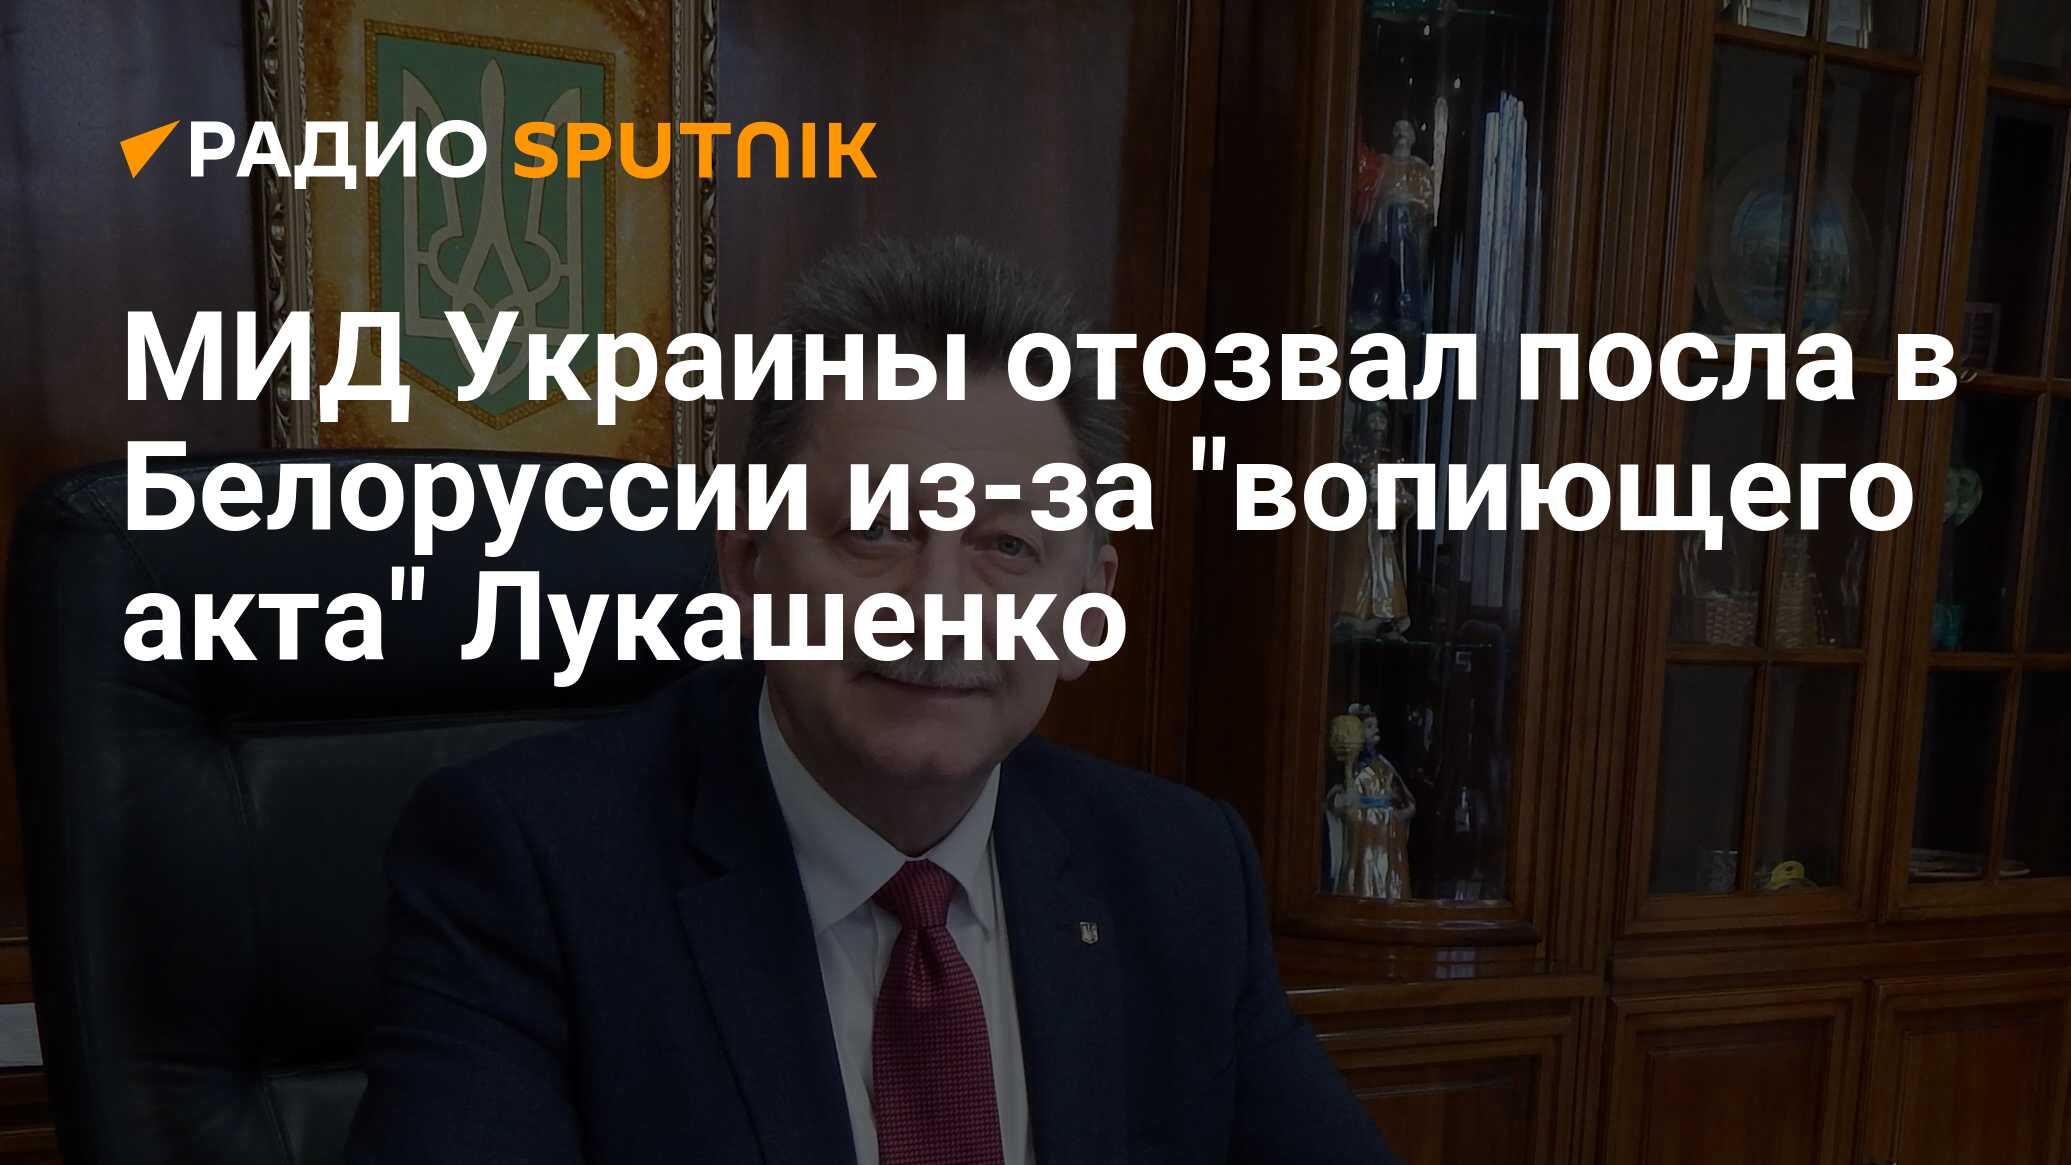 Посол Украины. МИД Украины отозвалось. Лукашенко и Пушилин.